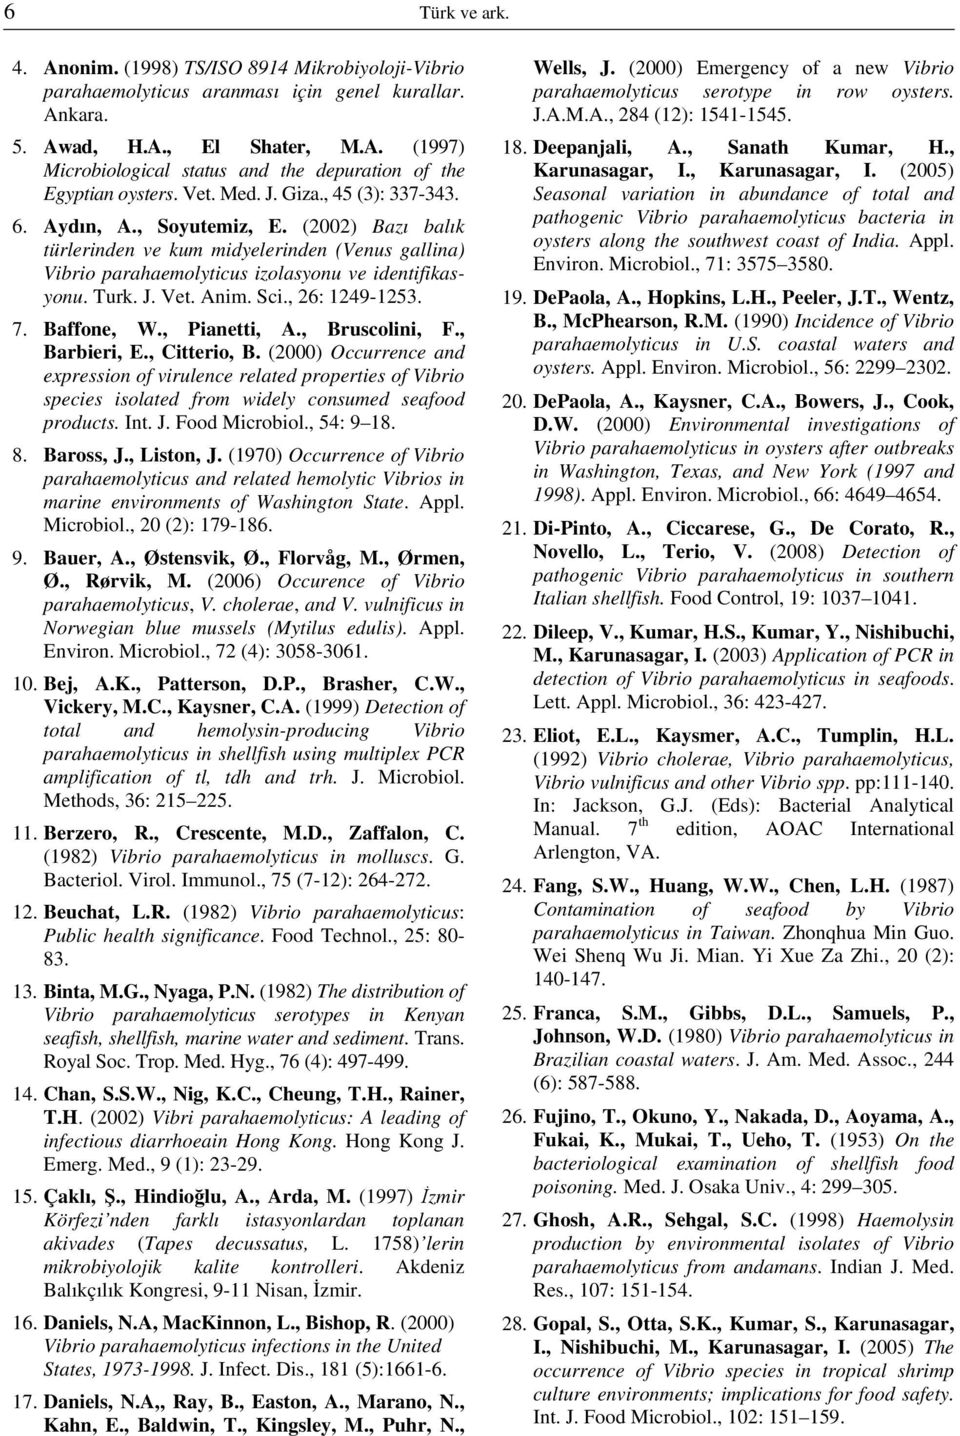 Anim. Sci., 26: 1249-1253. 7. Baffone, W., Pianetti, A., Bruscolini, F., Barbieri, E., Citterio, B.